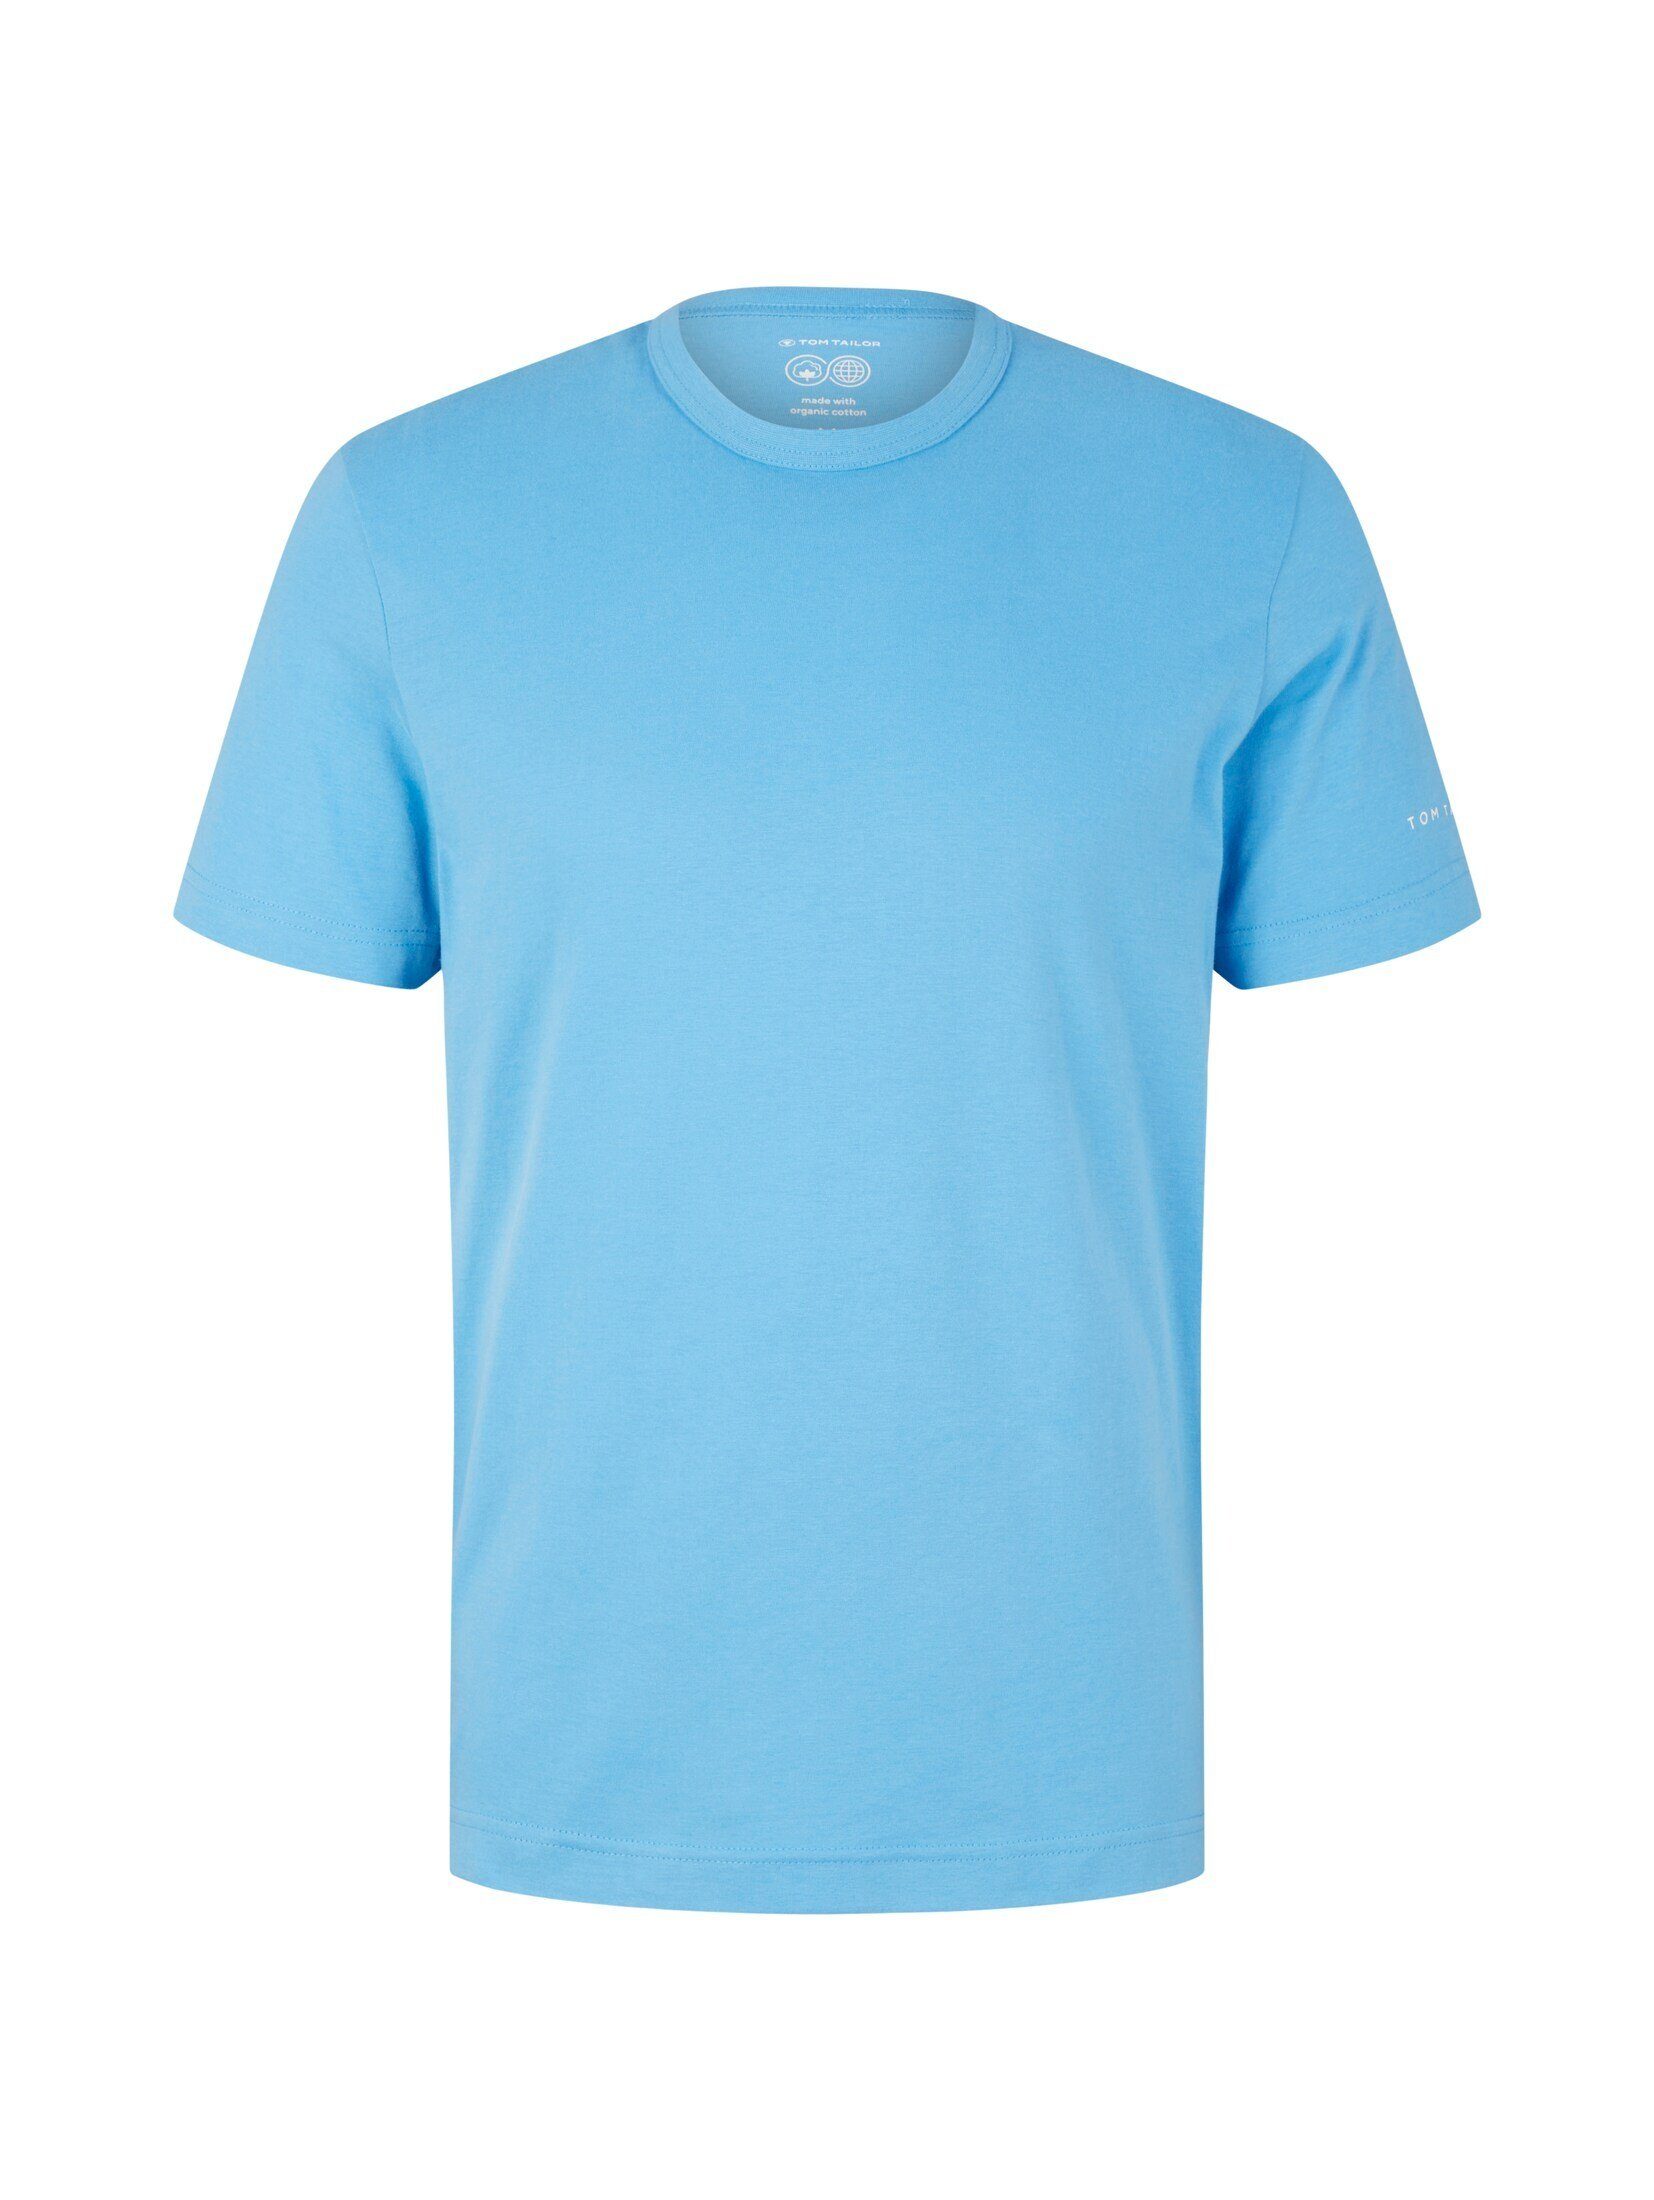 TAILOR T-Shirt T-Shirt sky rainy TOM Basic blue